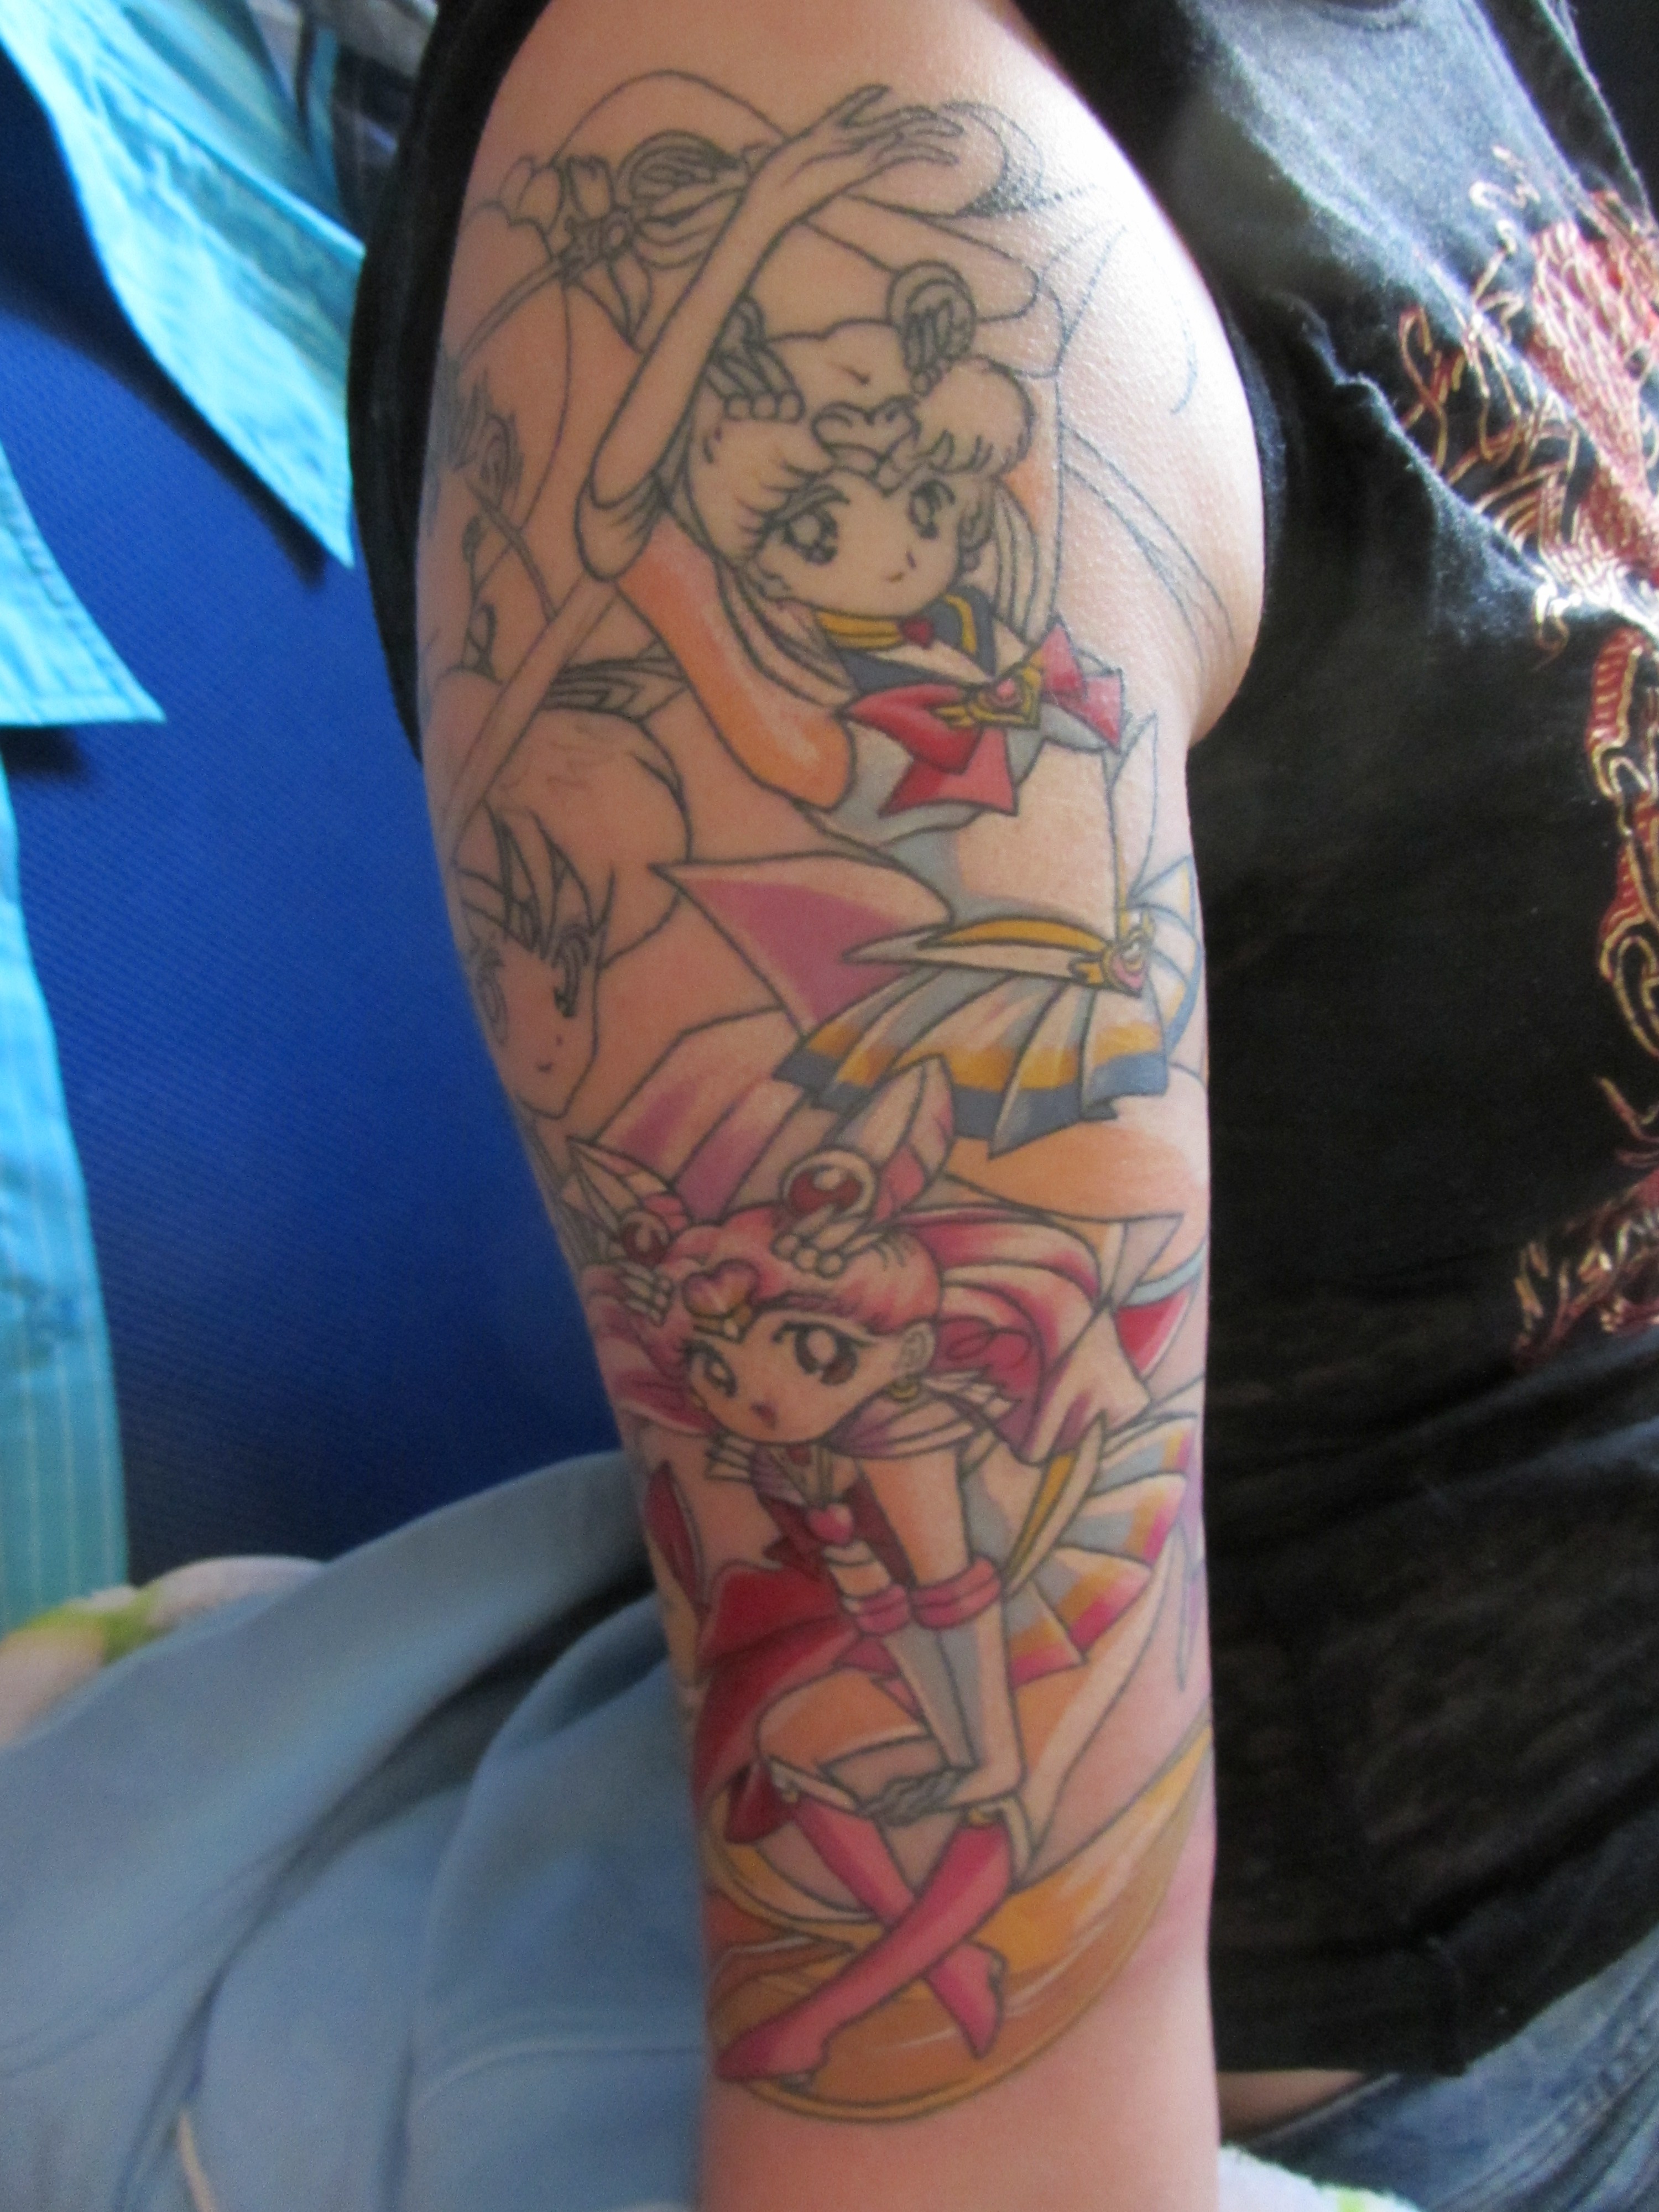 Sailor girl's moon anime tattoo - | TattooMagz â€º Tattoo Designs / Ink